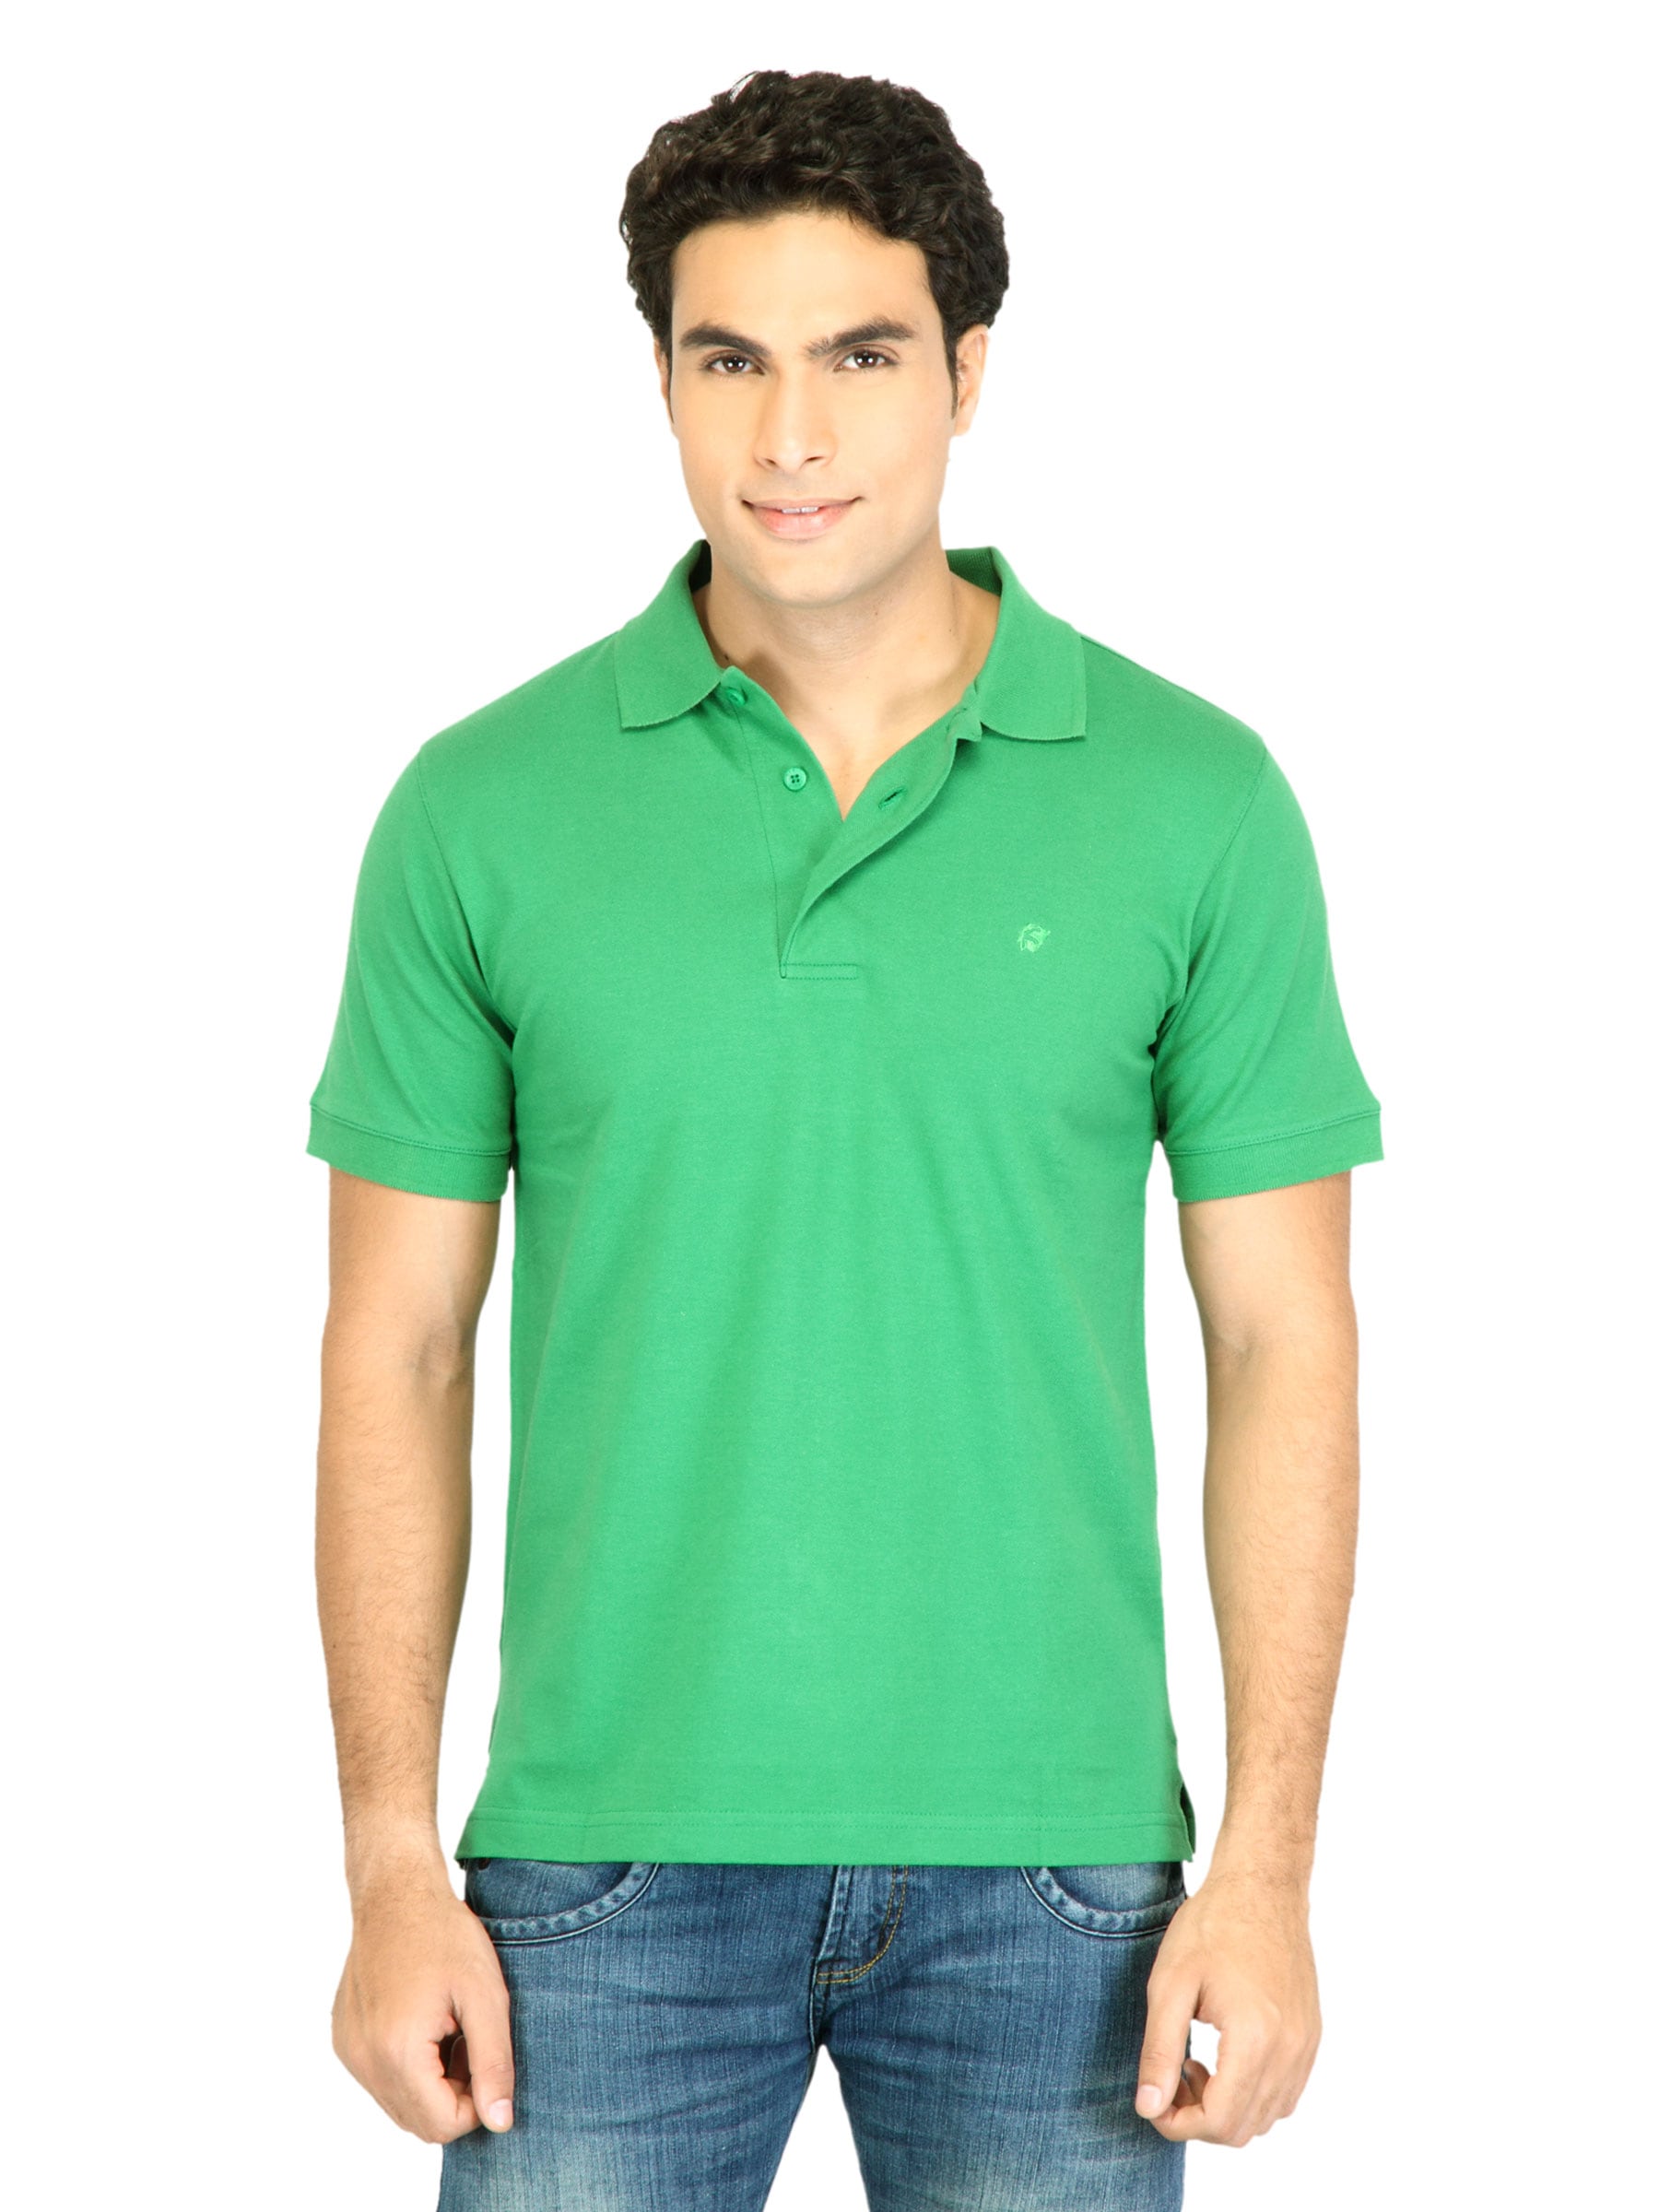 Facit Men Polo Tee Green Tshirt